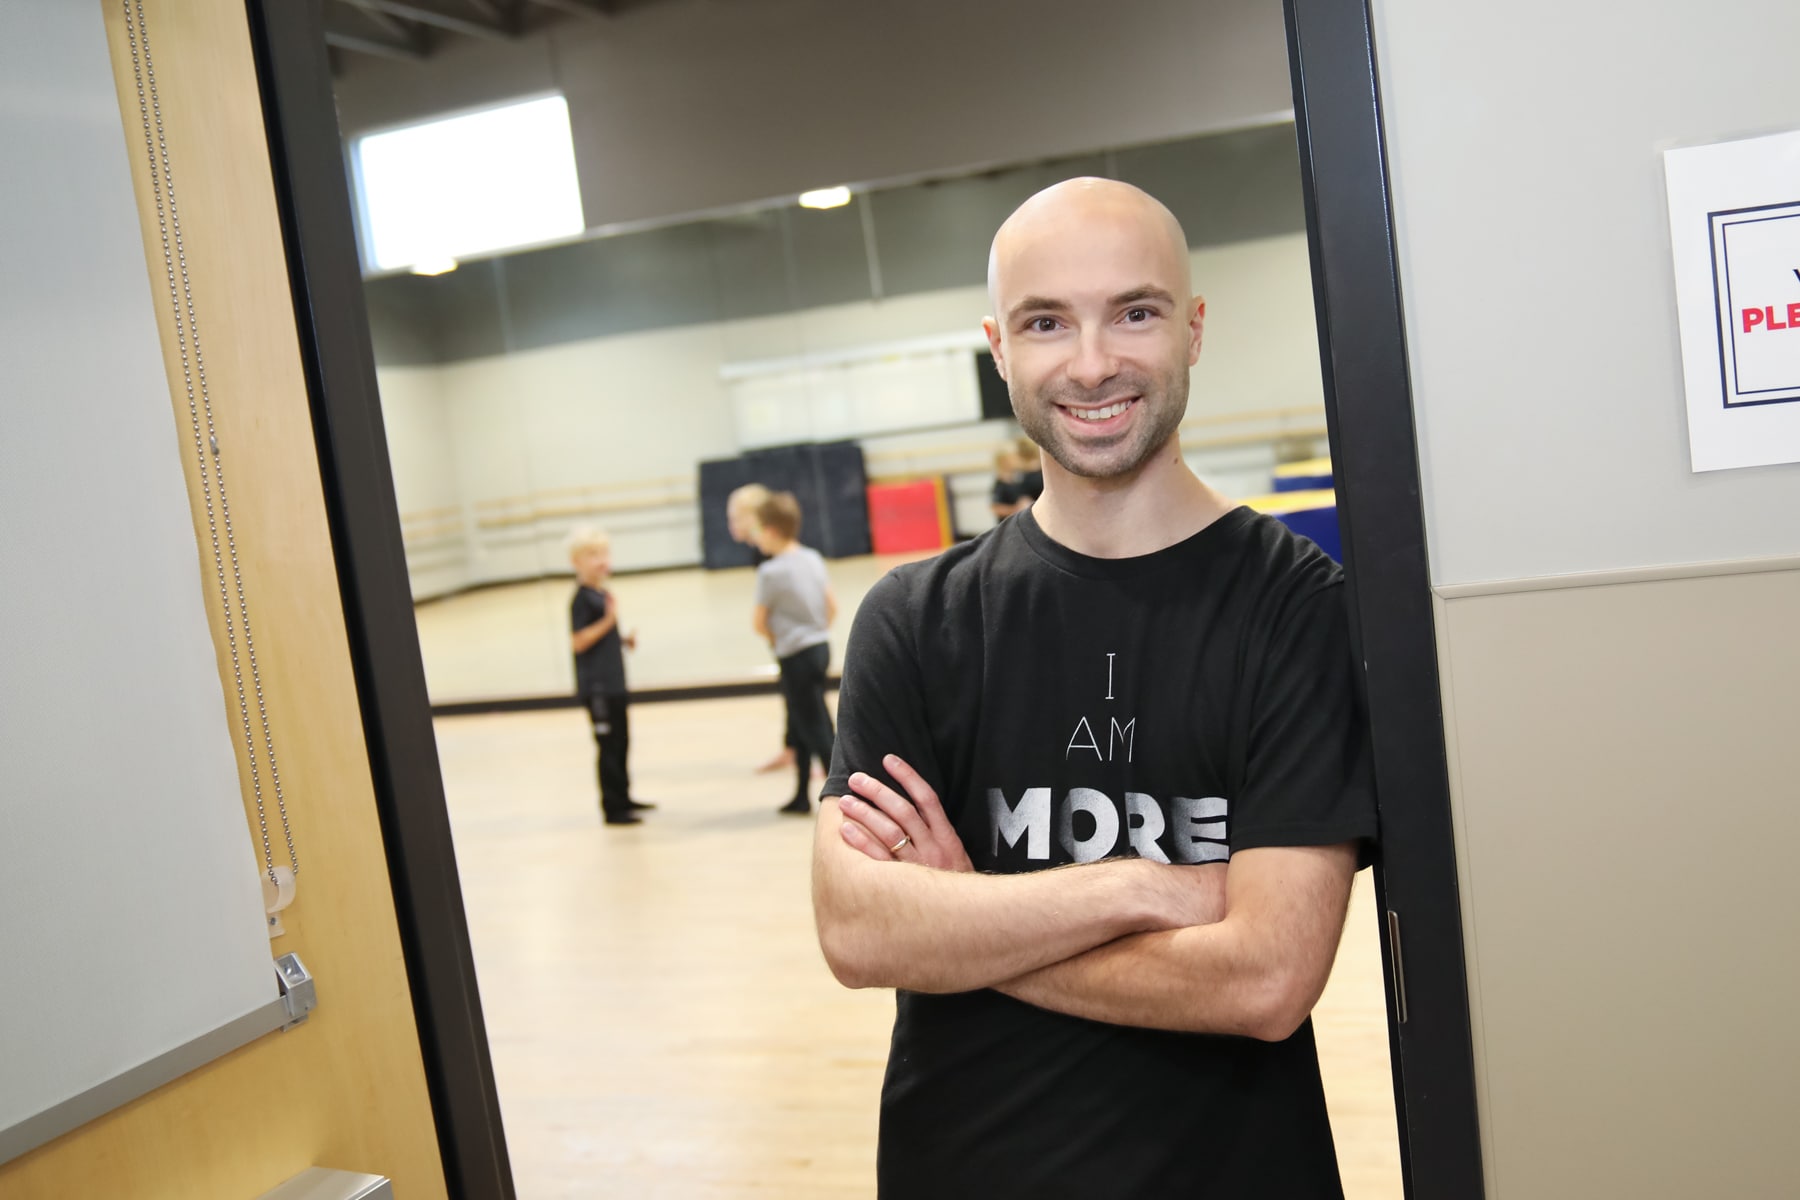 Male dance teacher standing in doorway smiling